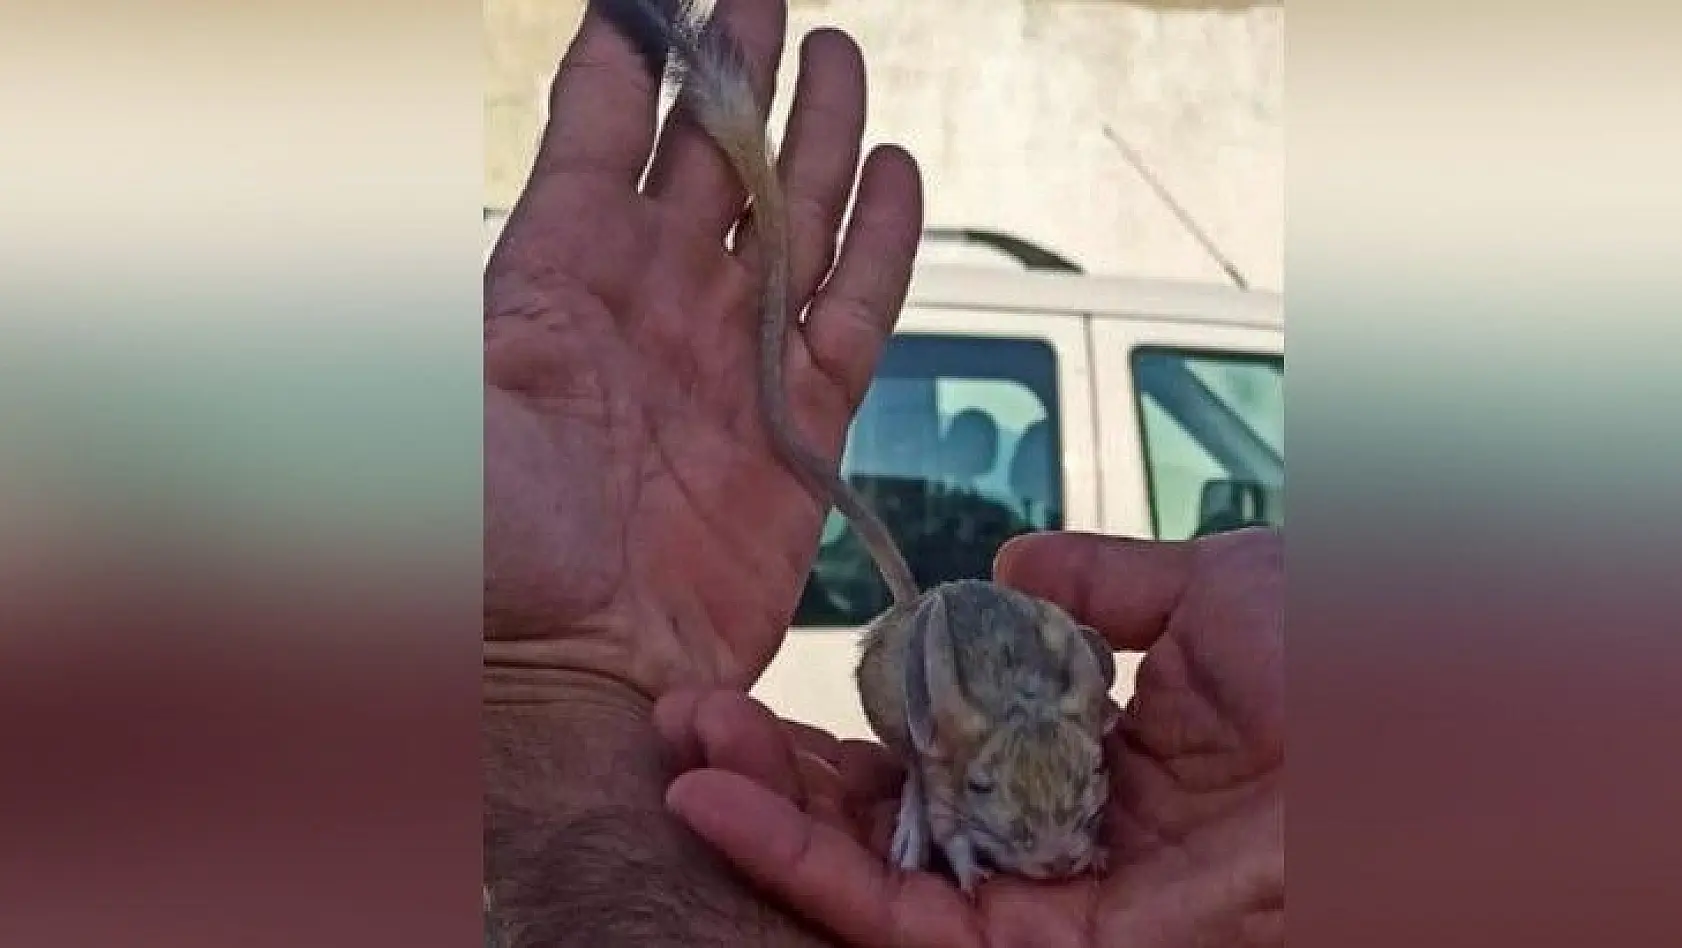 Elazığ'da nesli tükenme tehlikesi altında bulunan Arap tavşanı görüntülendi